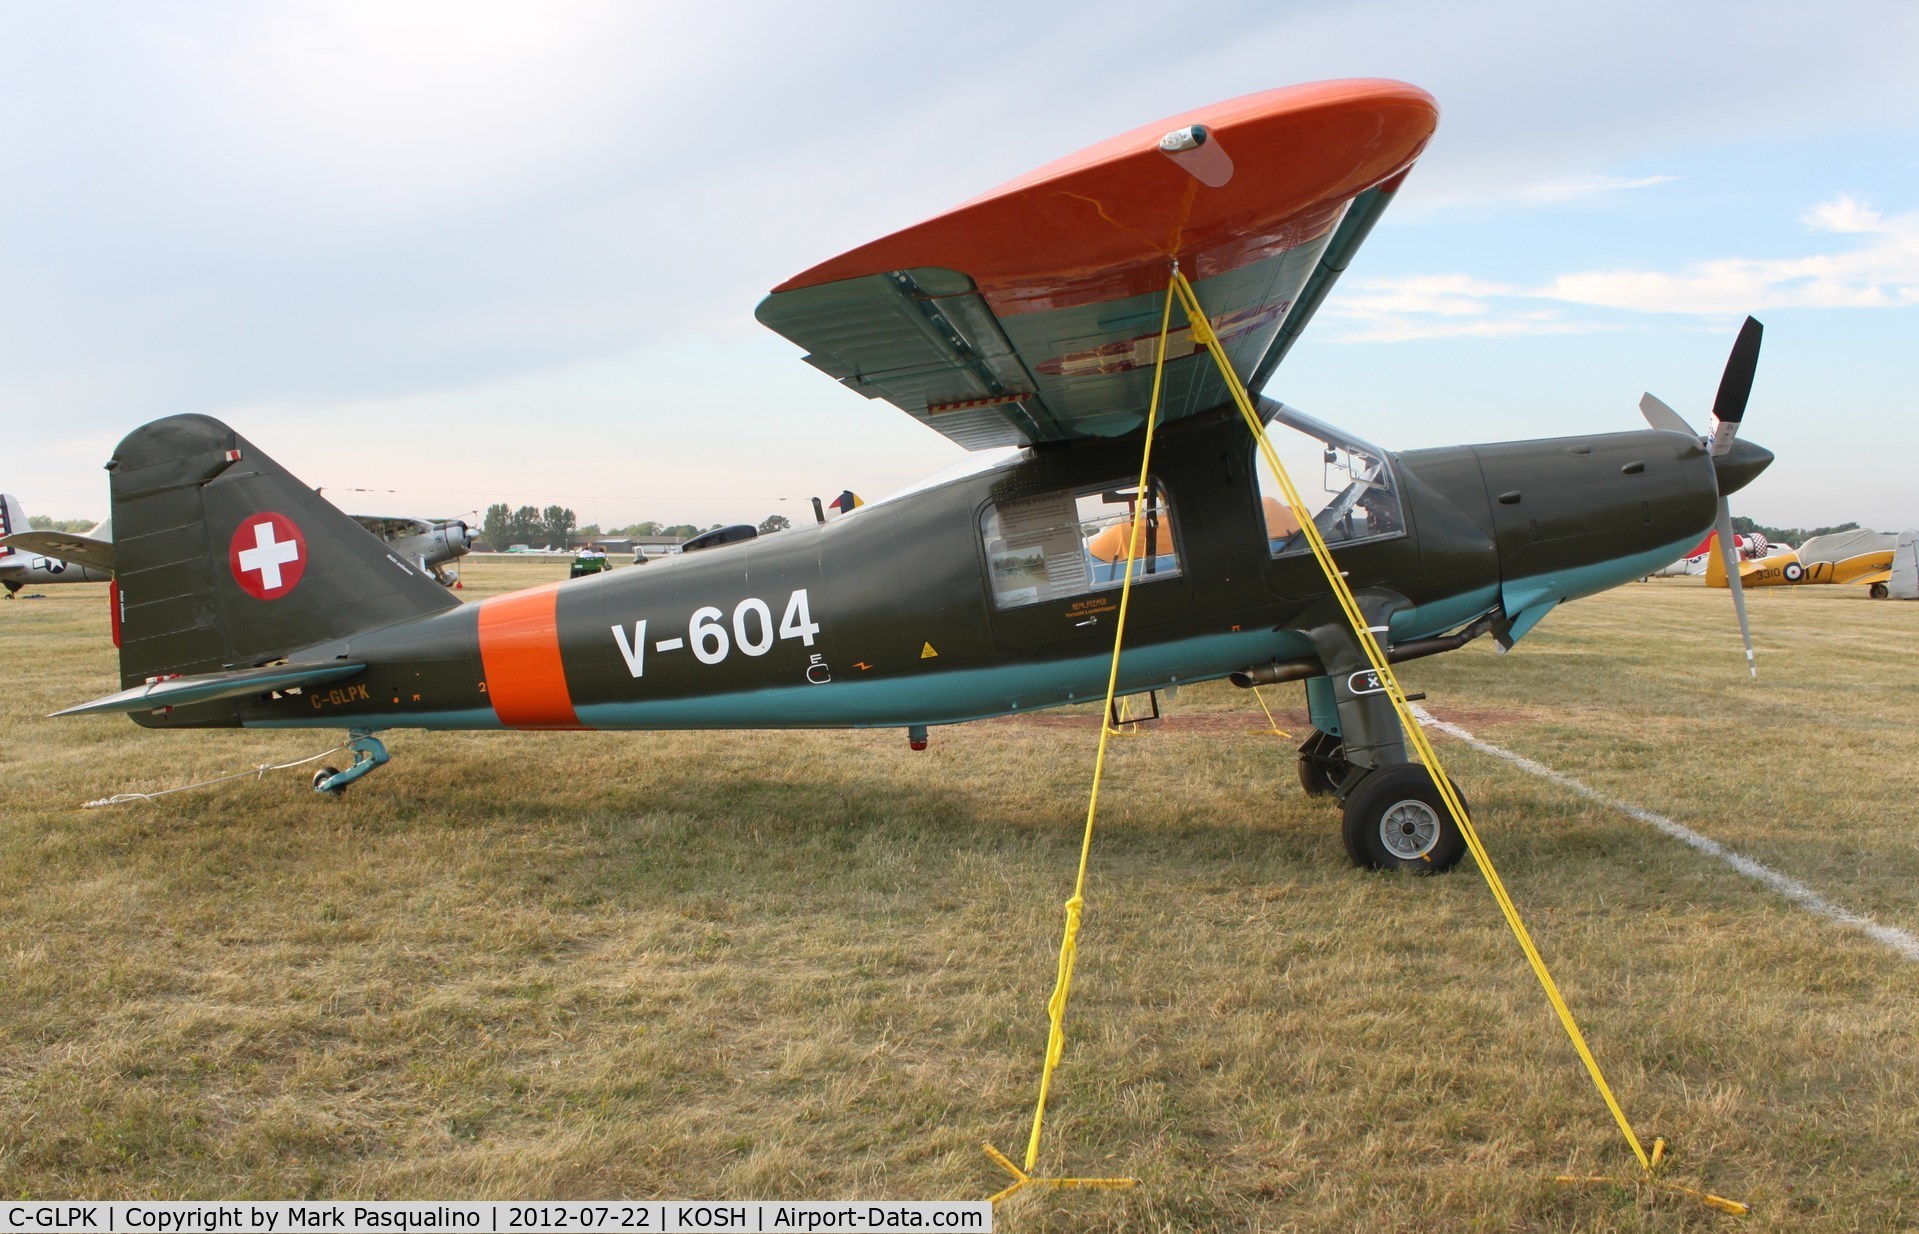 C-GLPK, 1958 Dornier Do-27H-2 C/N 27-1802-2011, Dornier Do-27 H-2